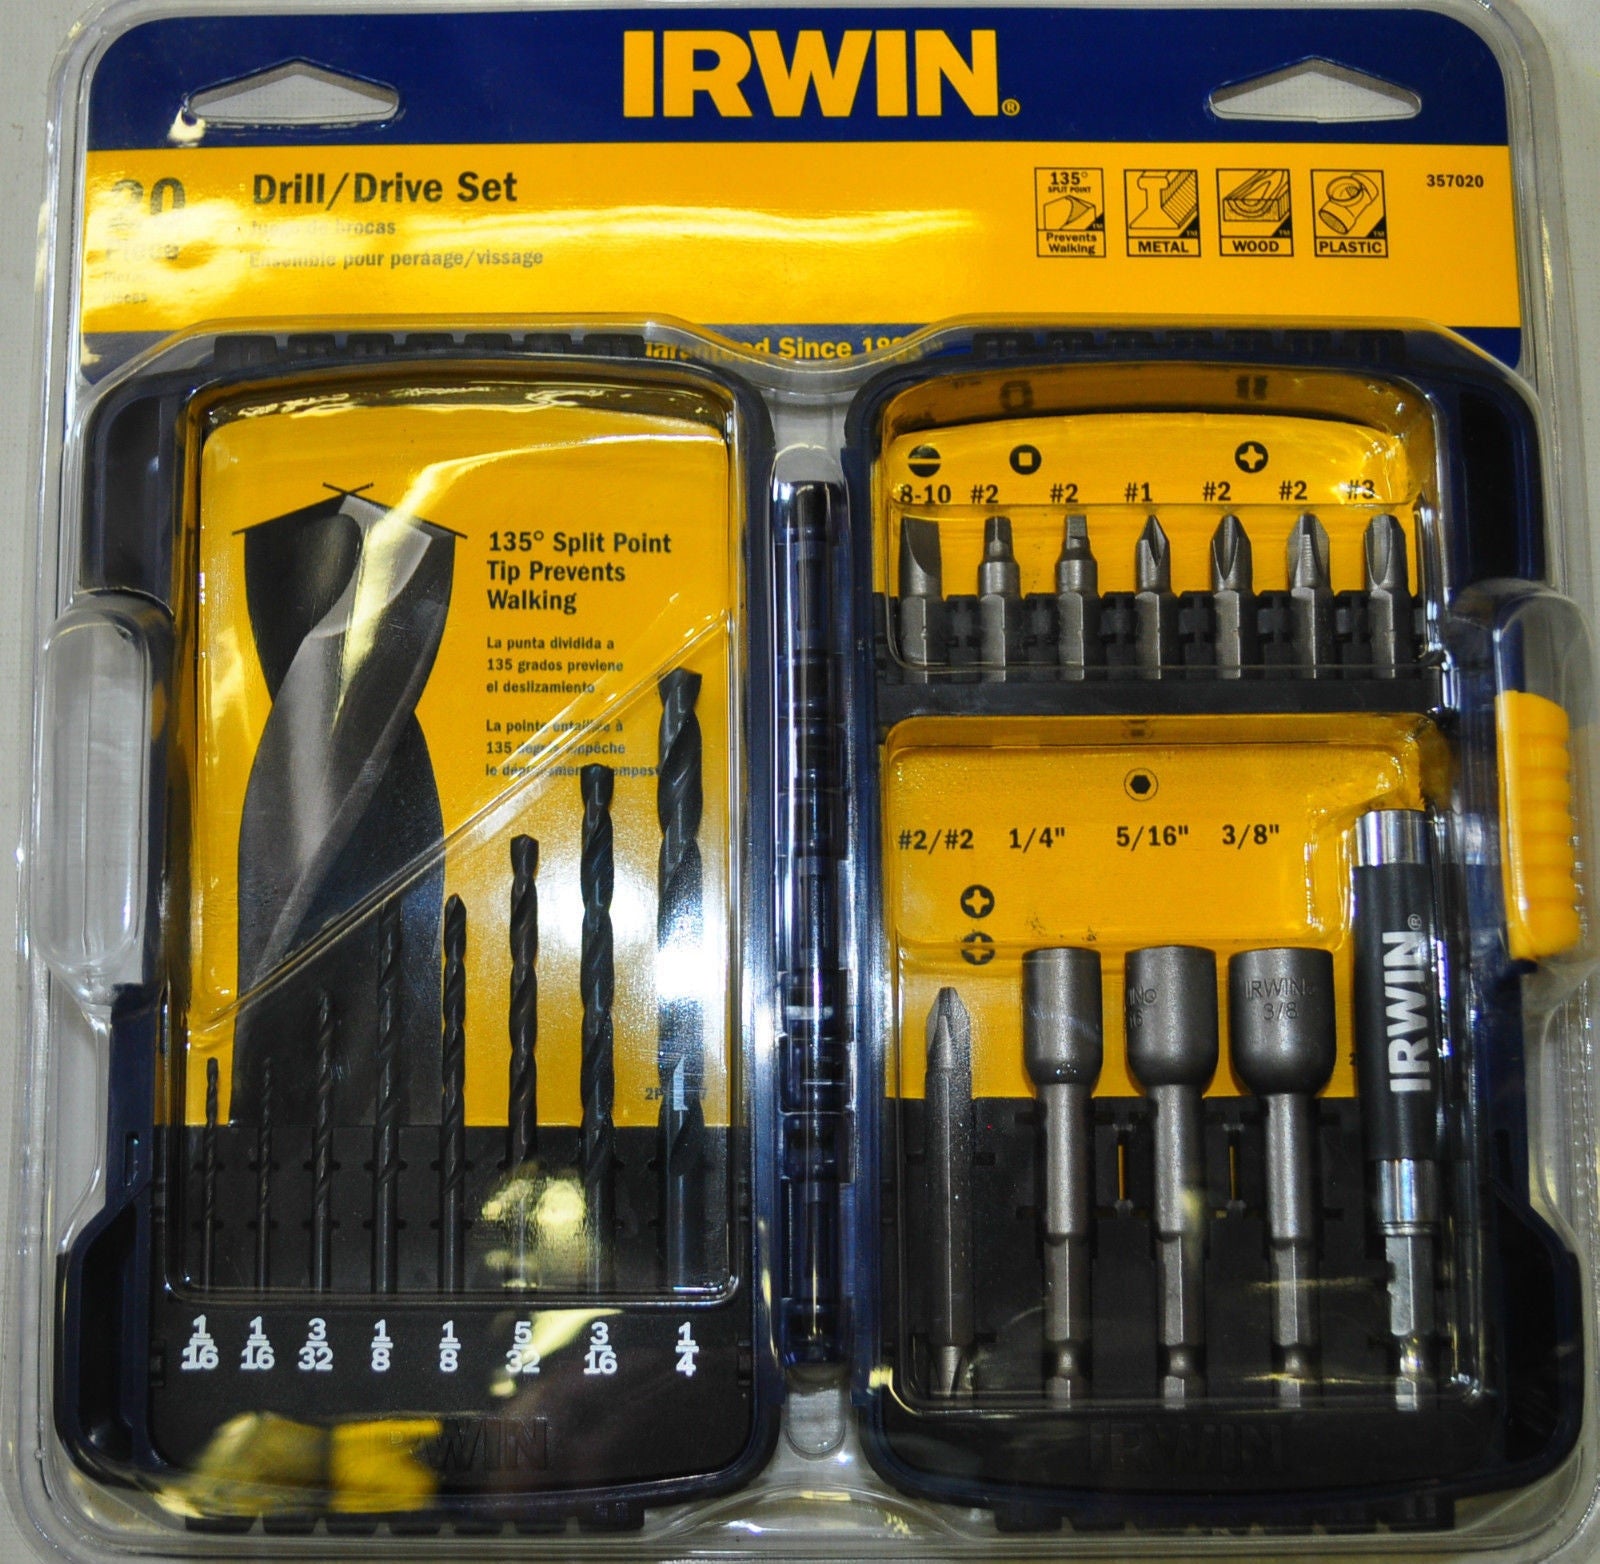 Irwin Tools 357020 20 Piece Drill & Drive Bit Set Black Oxide Drills